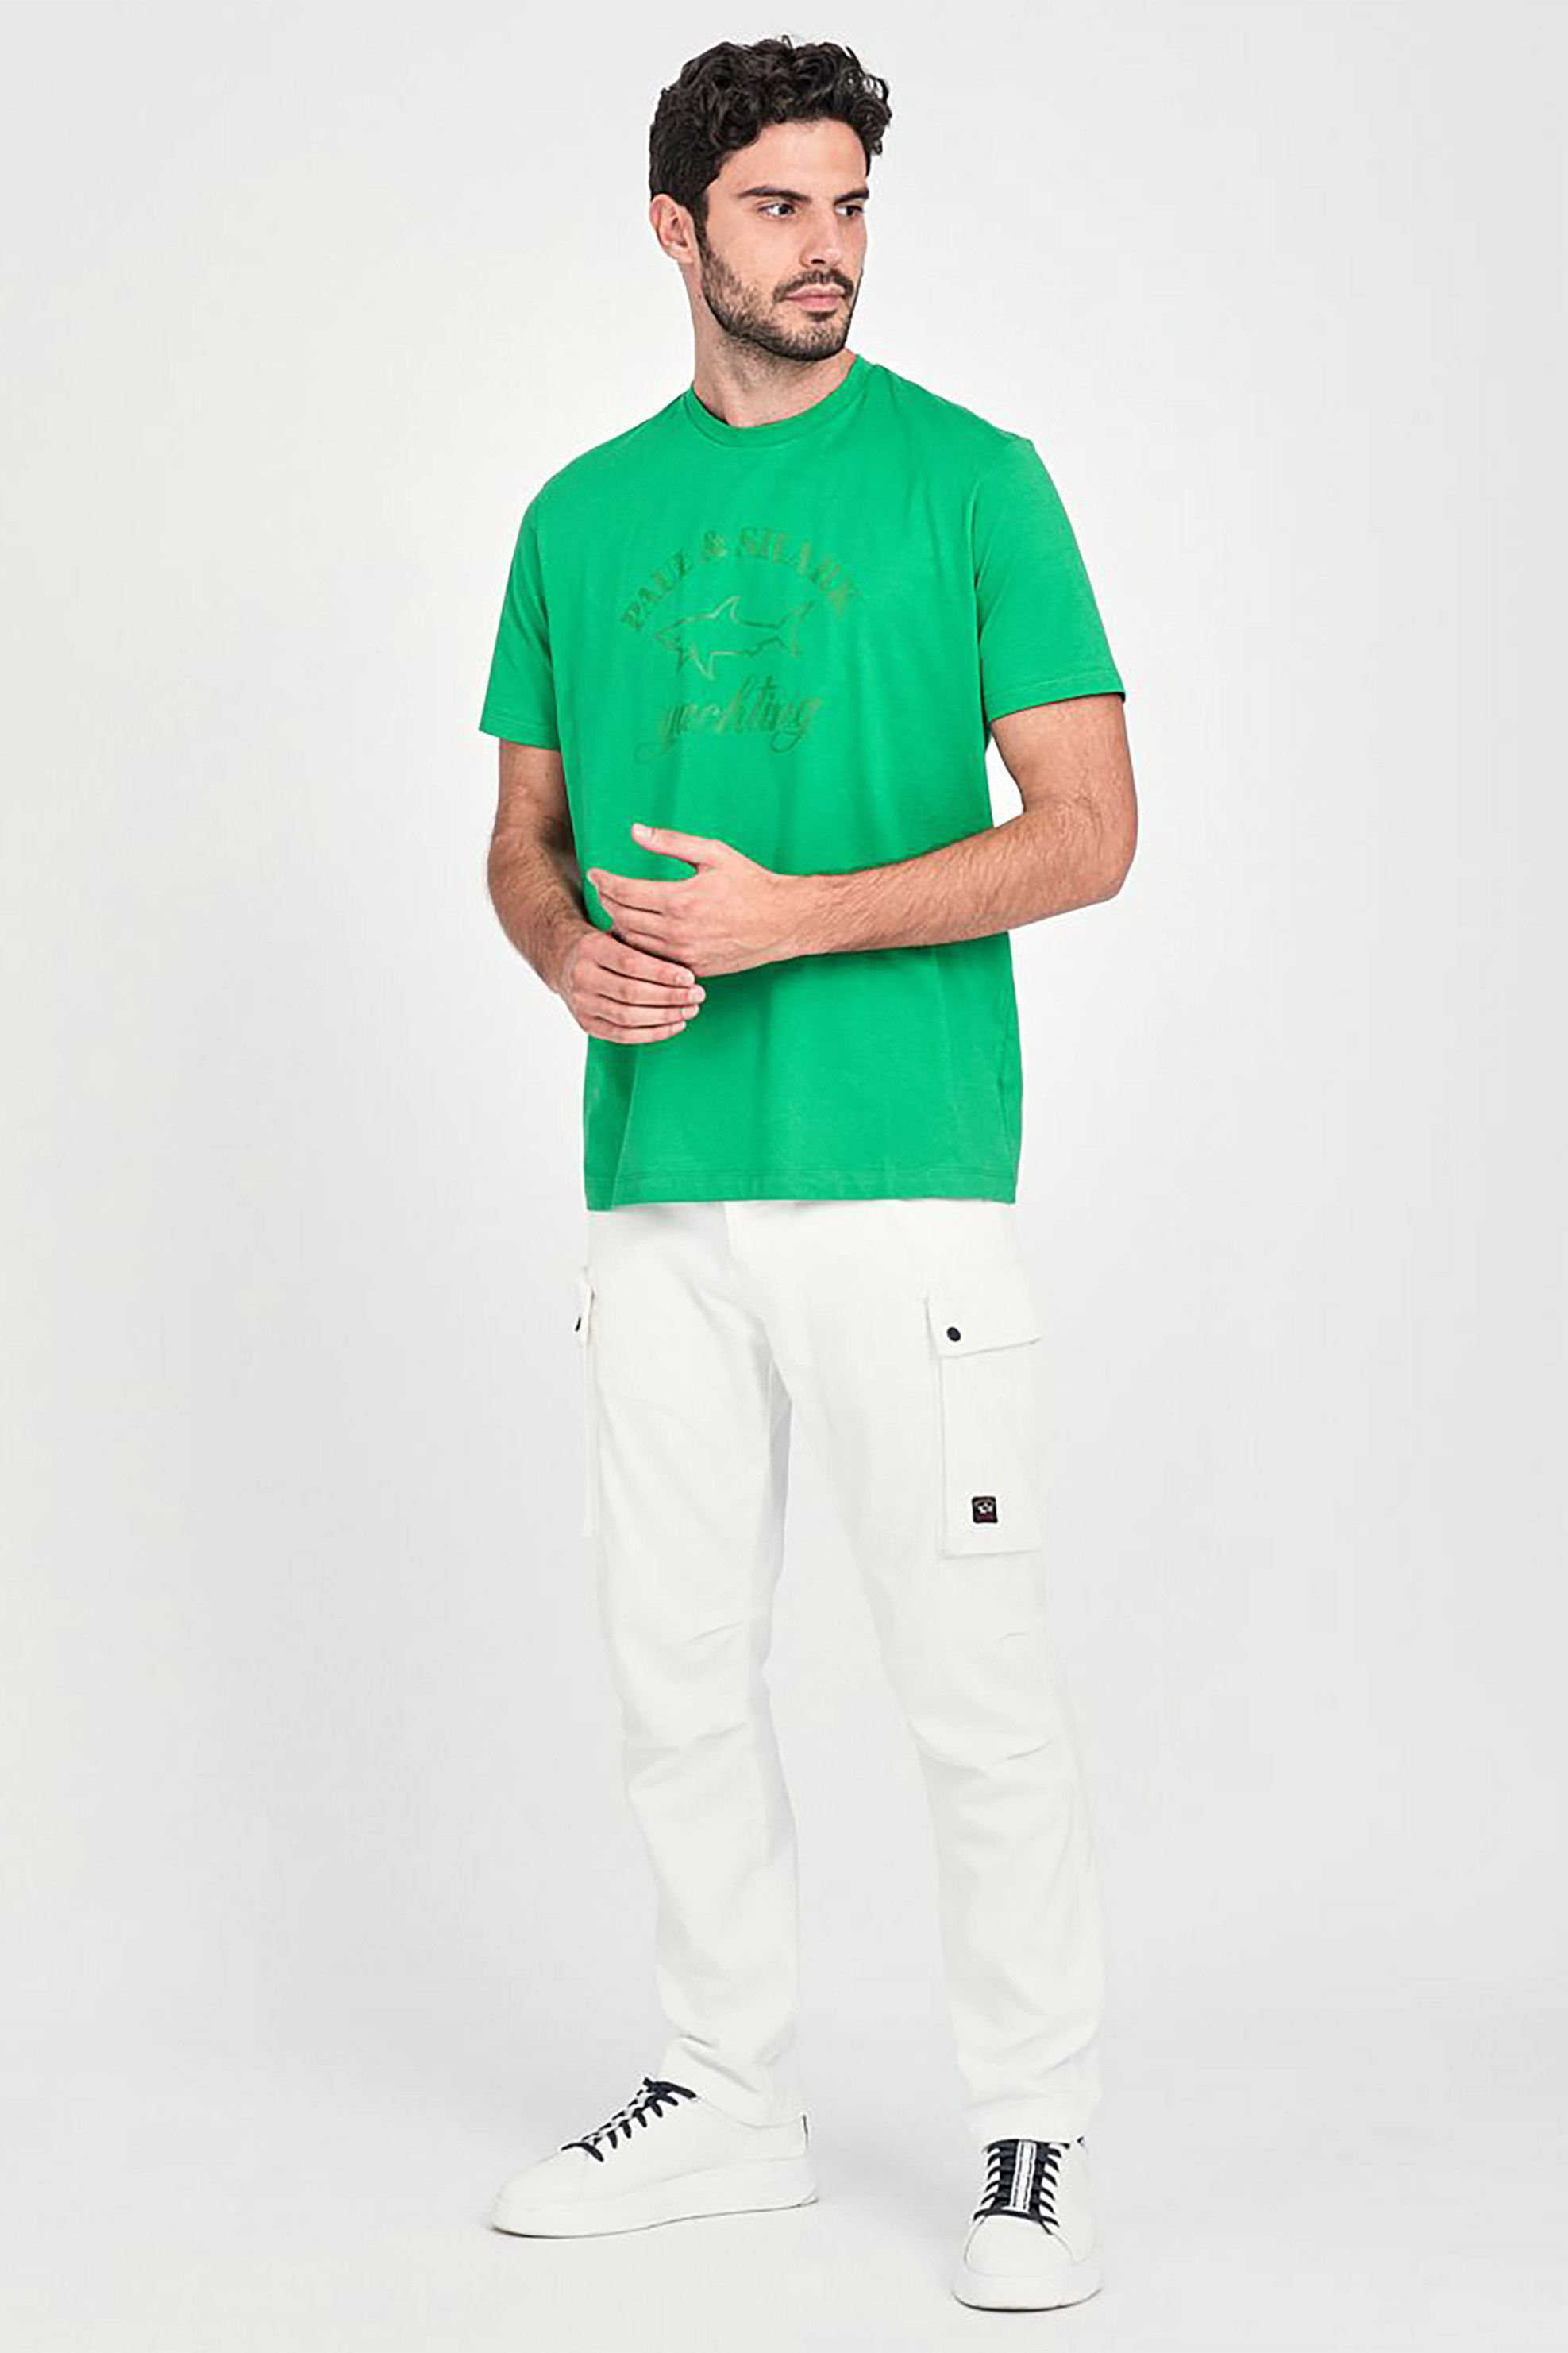 Άνδρας > ΡΟΥΧΑ > Μπλούζες > T-Shirts Paul&Shark ανδρικό T-shirt με logo print και στρογγυλή λαιμόκοψη - C0P1007 Πράσινο